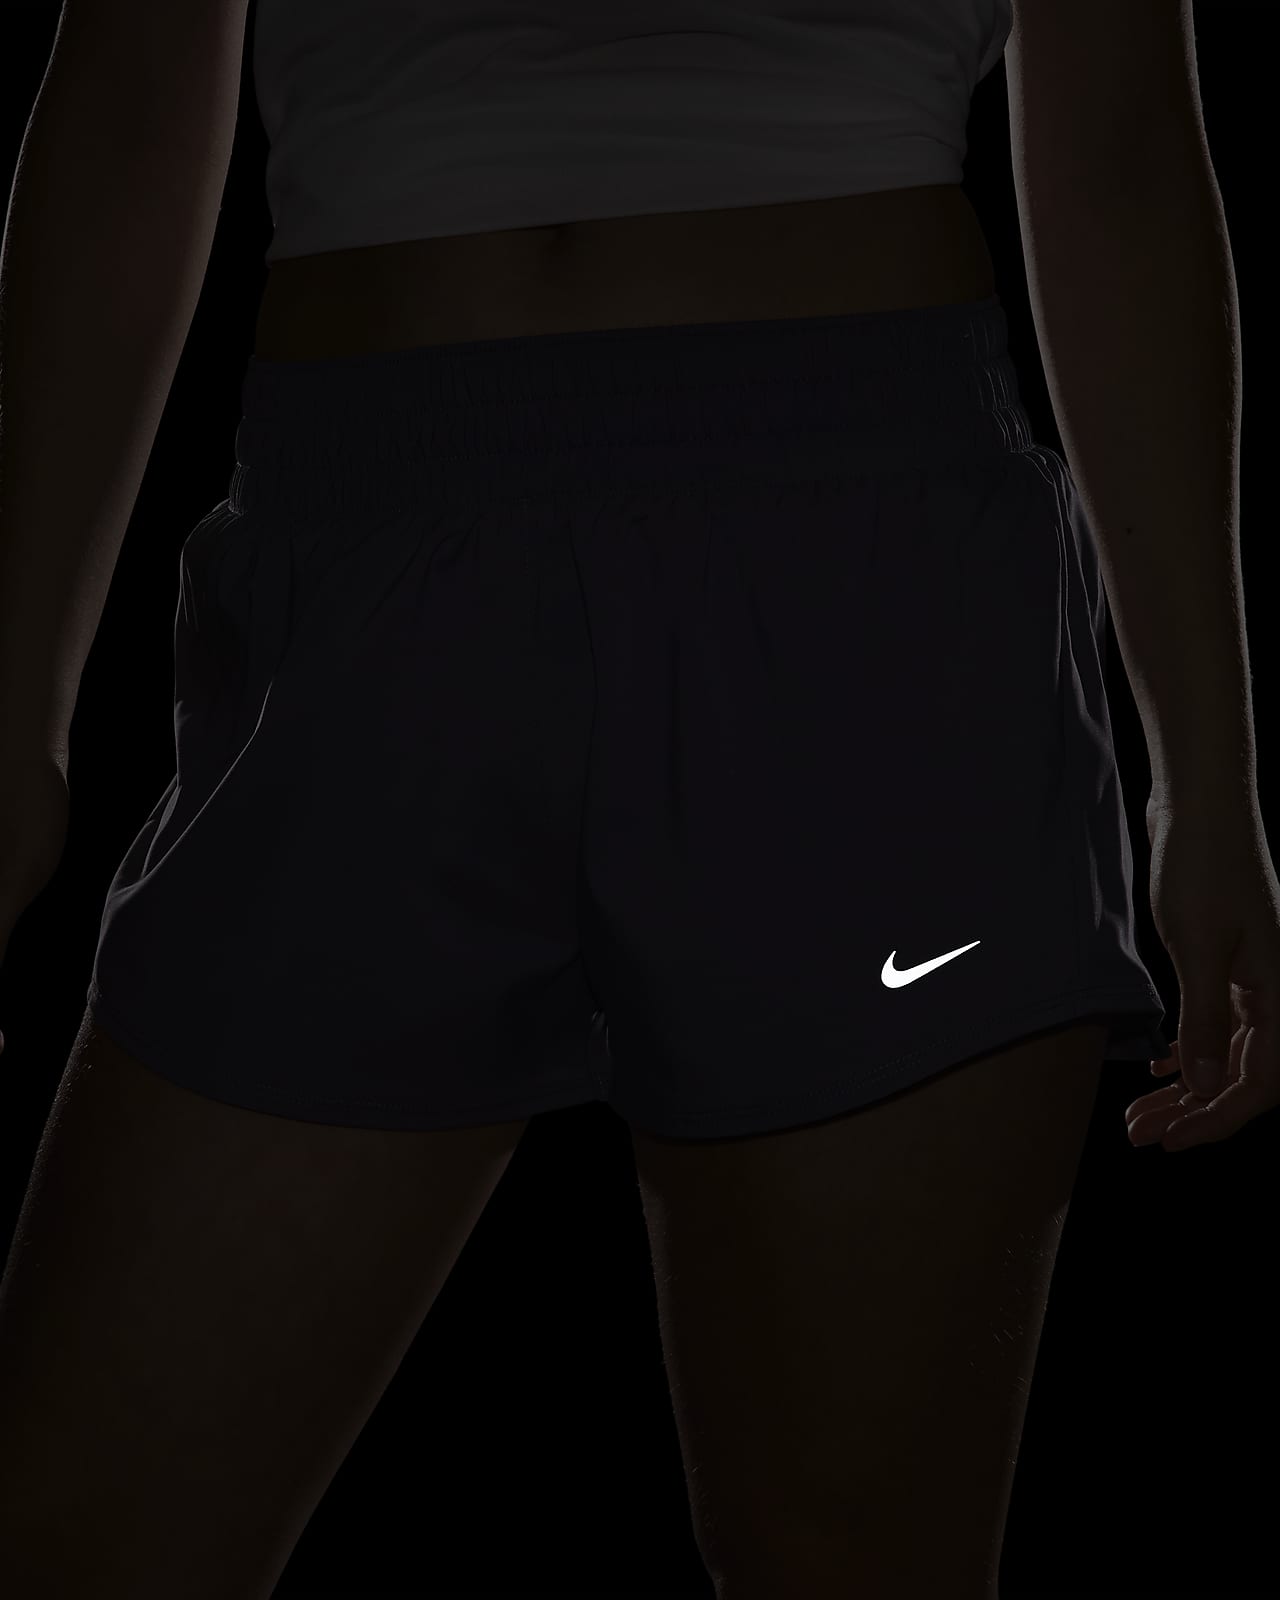 Nike NSW Shield Dri-Fit Tech Black/3M Pants Women's Sz XS NEW BV3311-010  $110